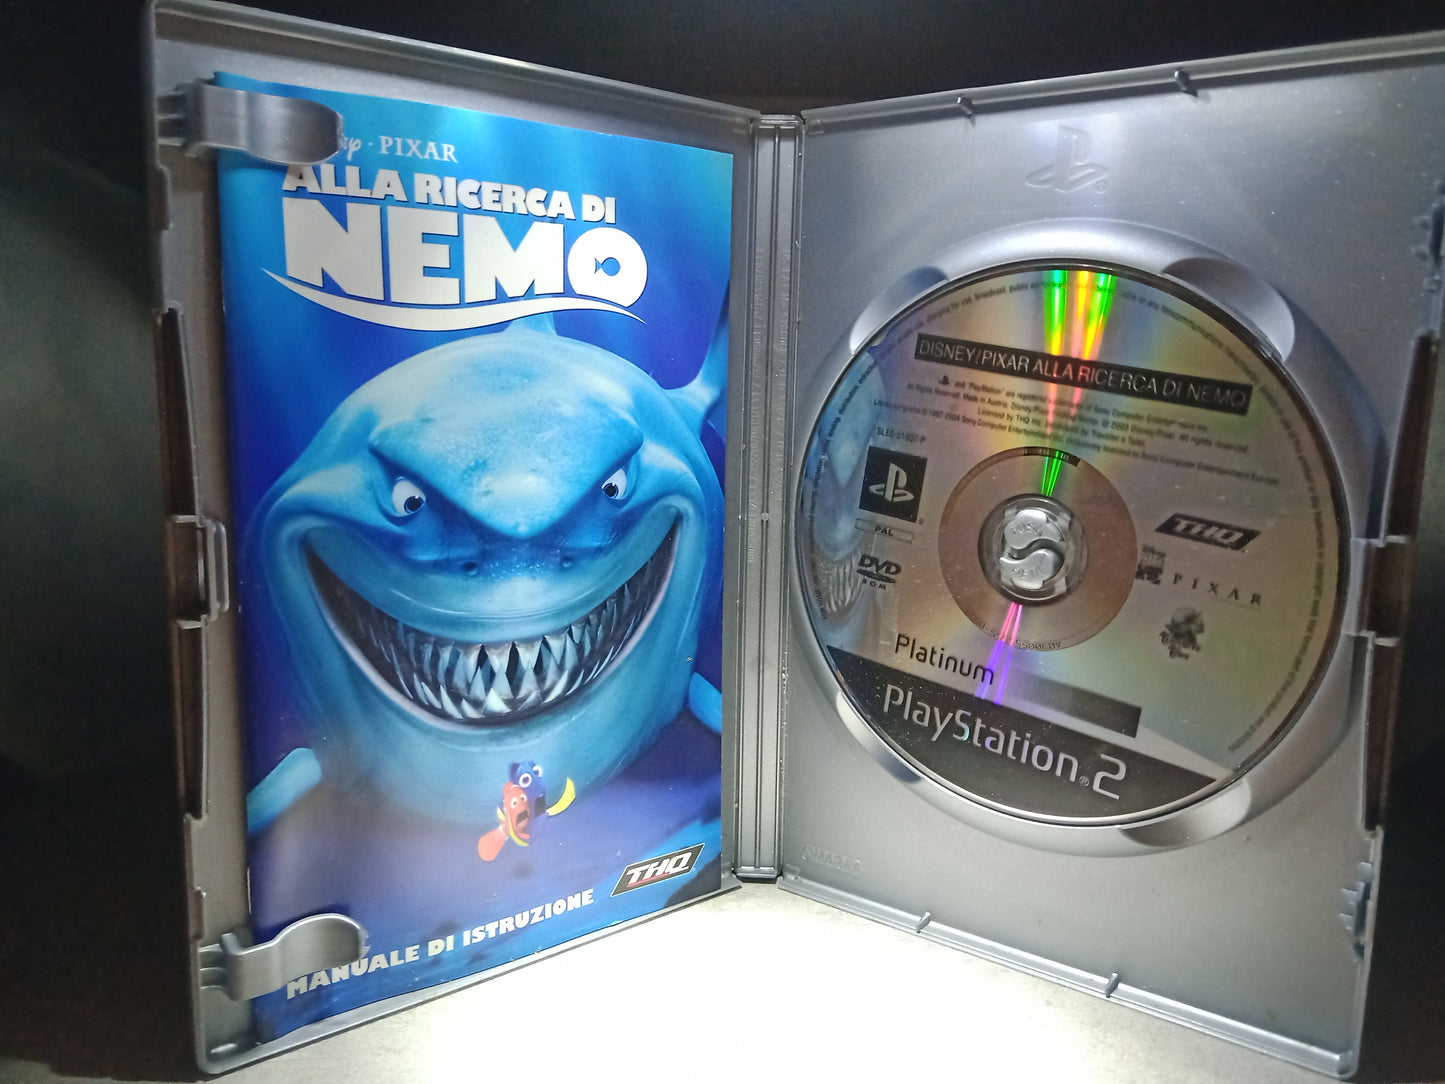 Alla ricerca di Nemo (platinum)